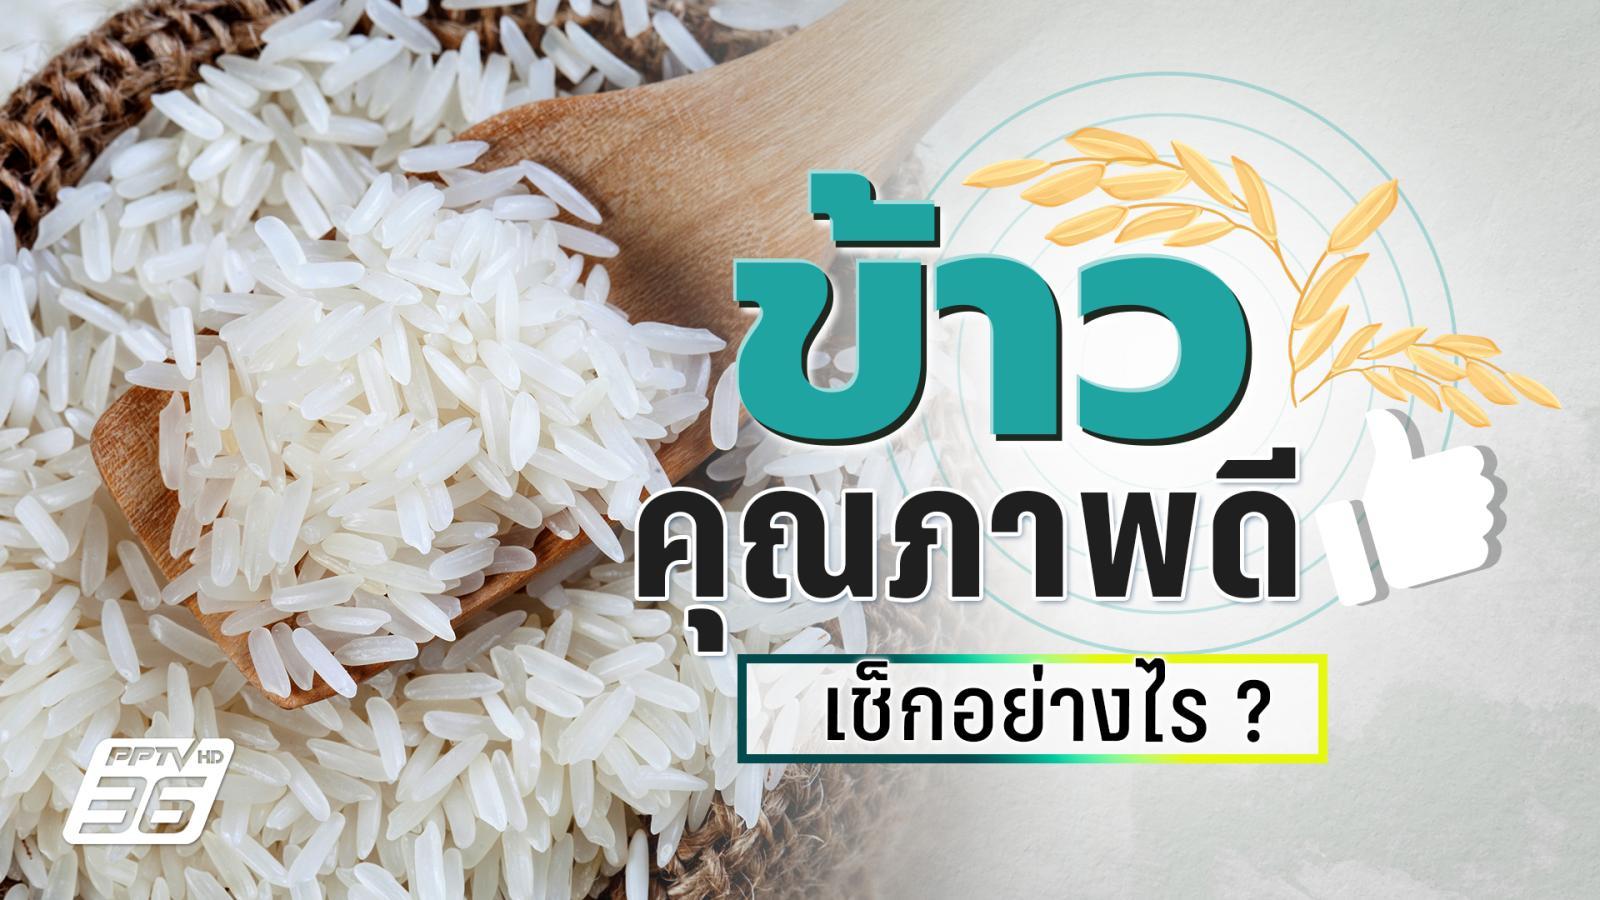 ชวนส่องสายพันธุ์ข้าวไทย พร้อมวิธีเช็กข้าวคุณภาพดีดูอย่างไร ?